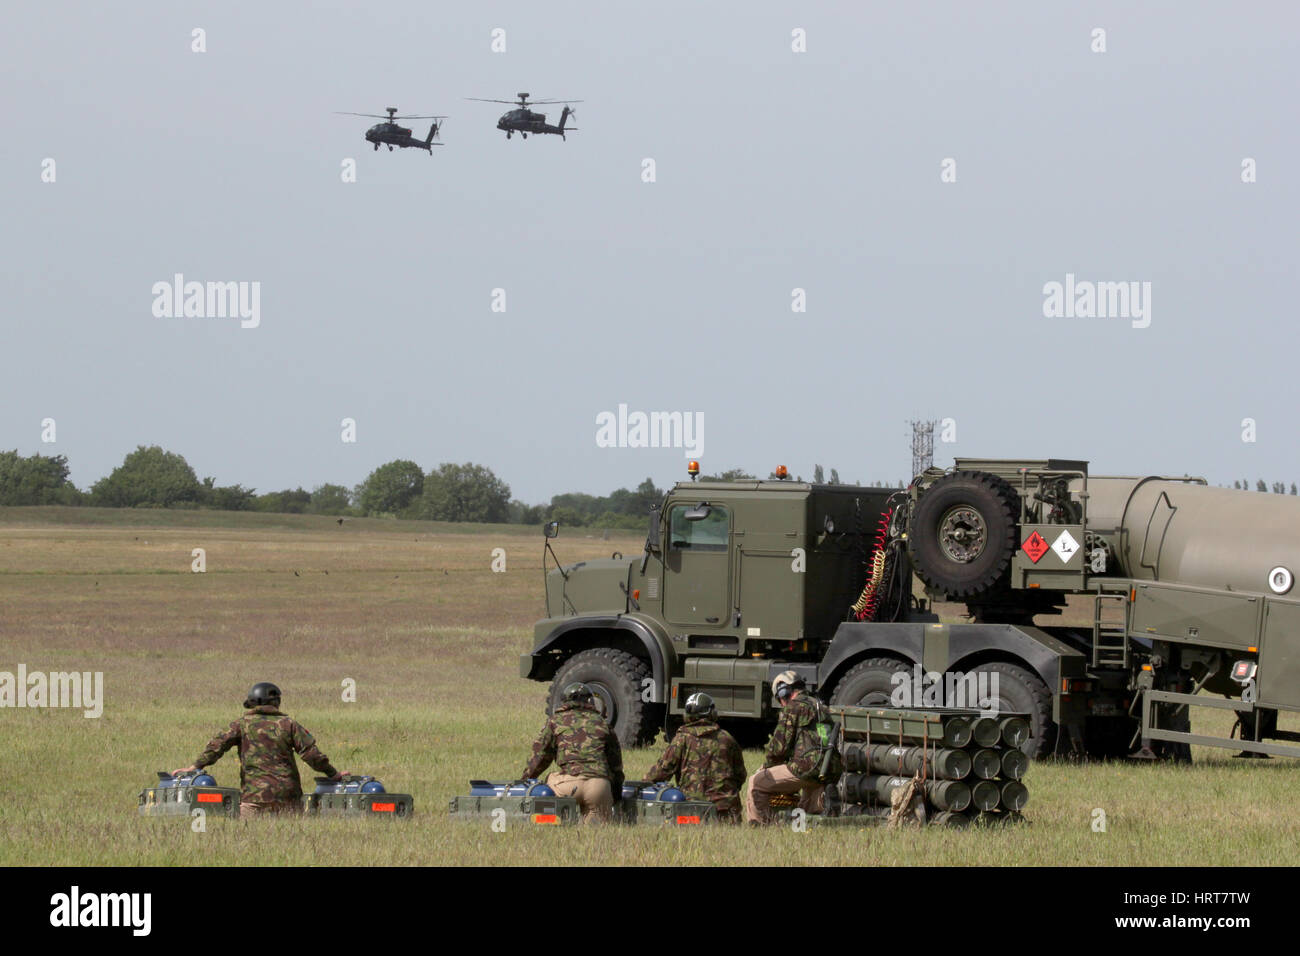 El armado y el avance del equipo de punto de reabastecimiento esperando un par de Apaches AAC durante una manifestación dada a los medios de comunicación. Foto de stock